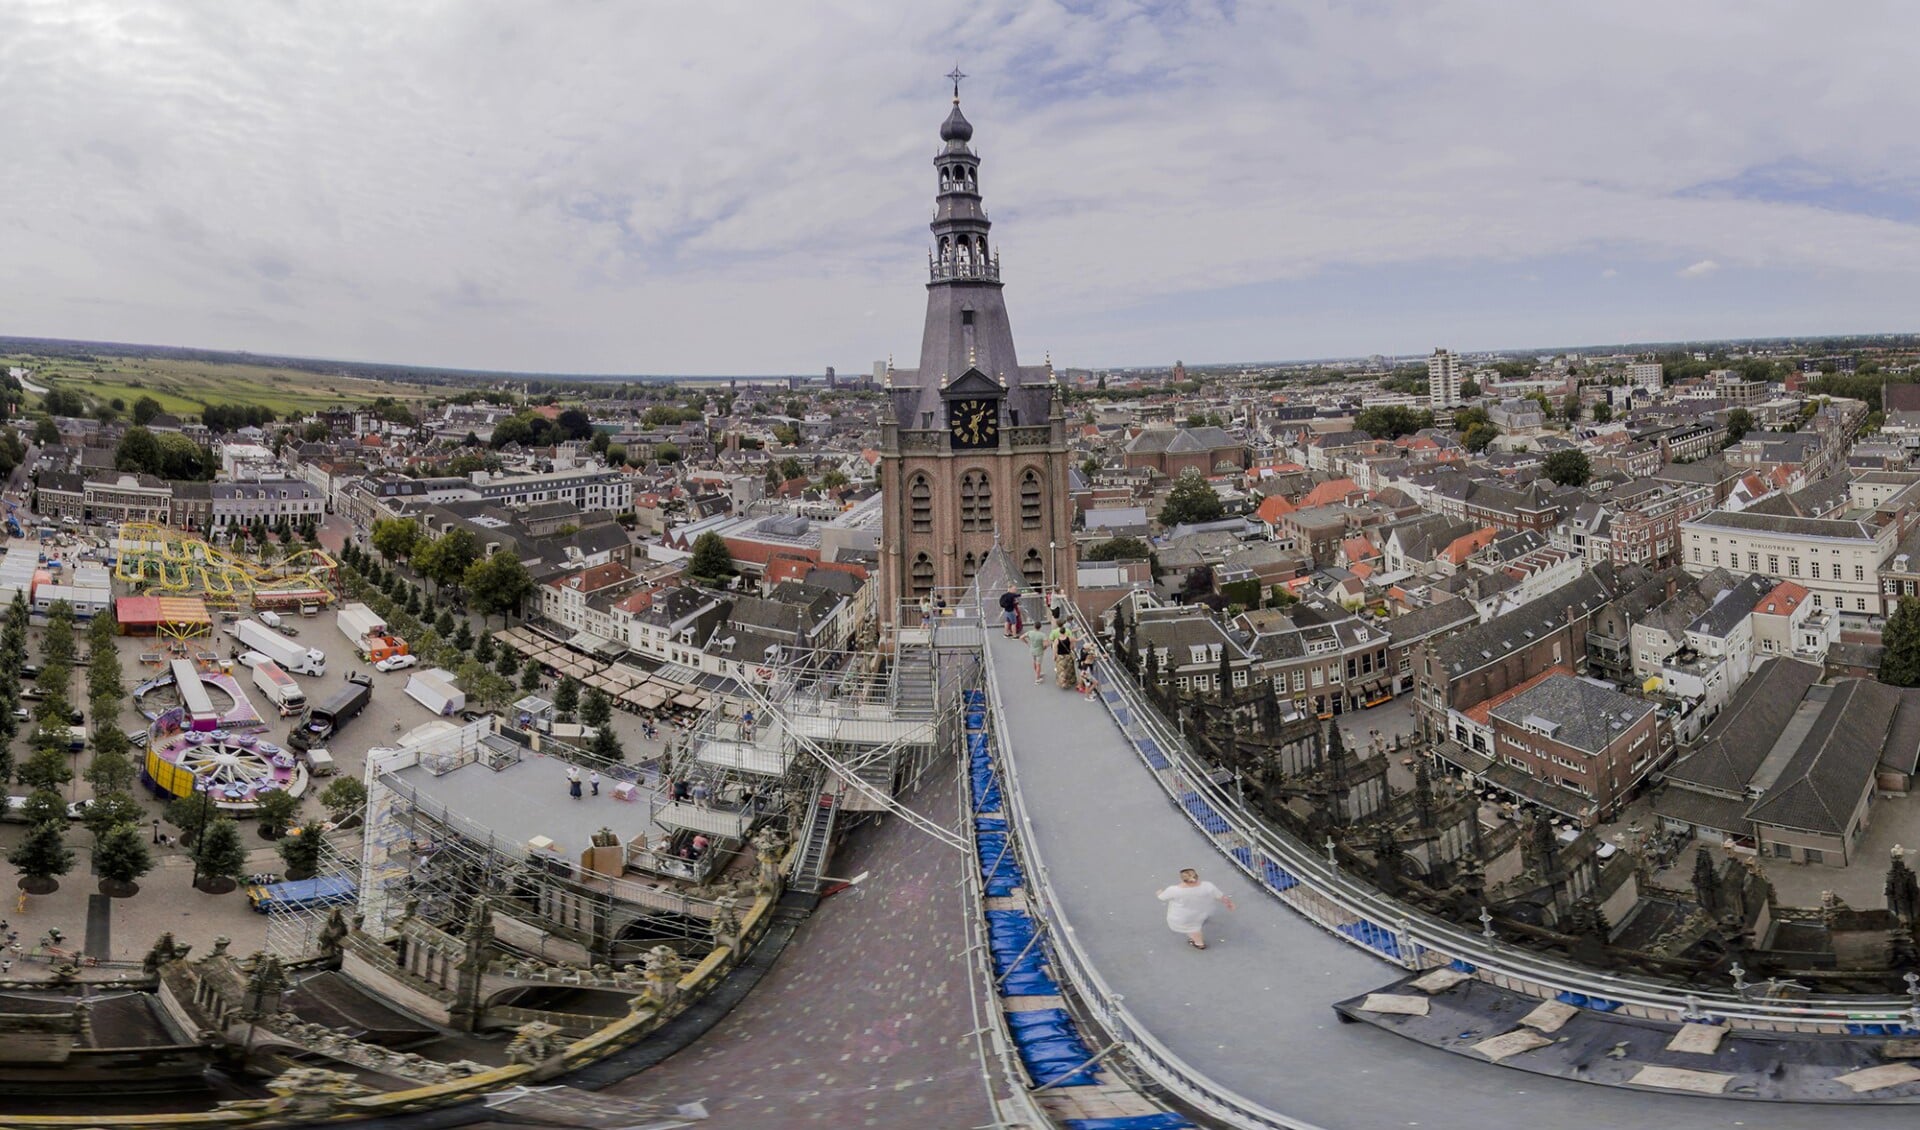 De binnenstad van Den Bosch gezien vanaf de Sint-Jan.